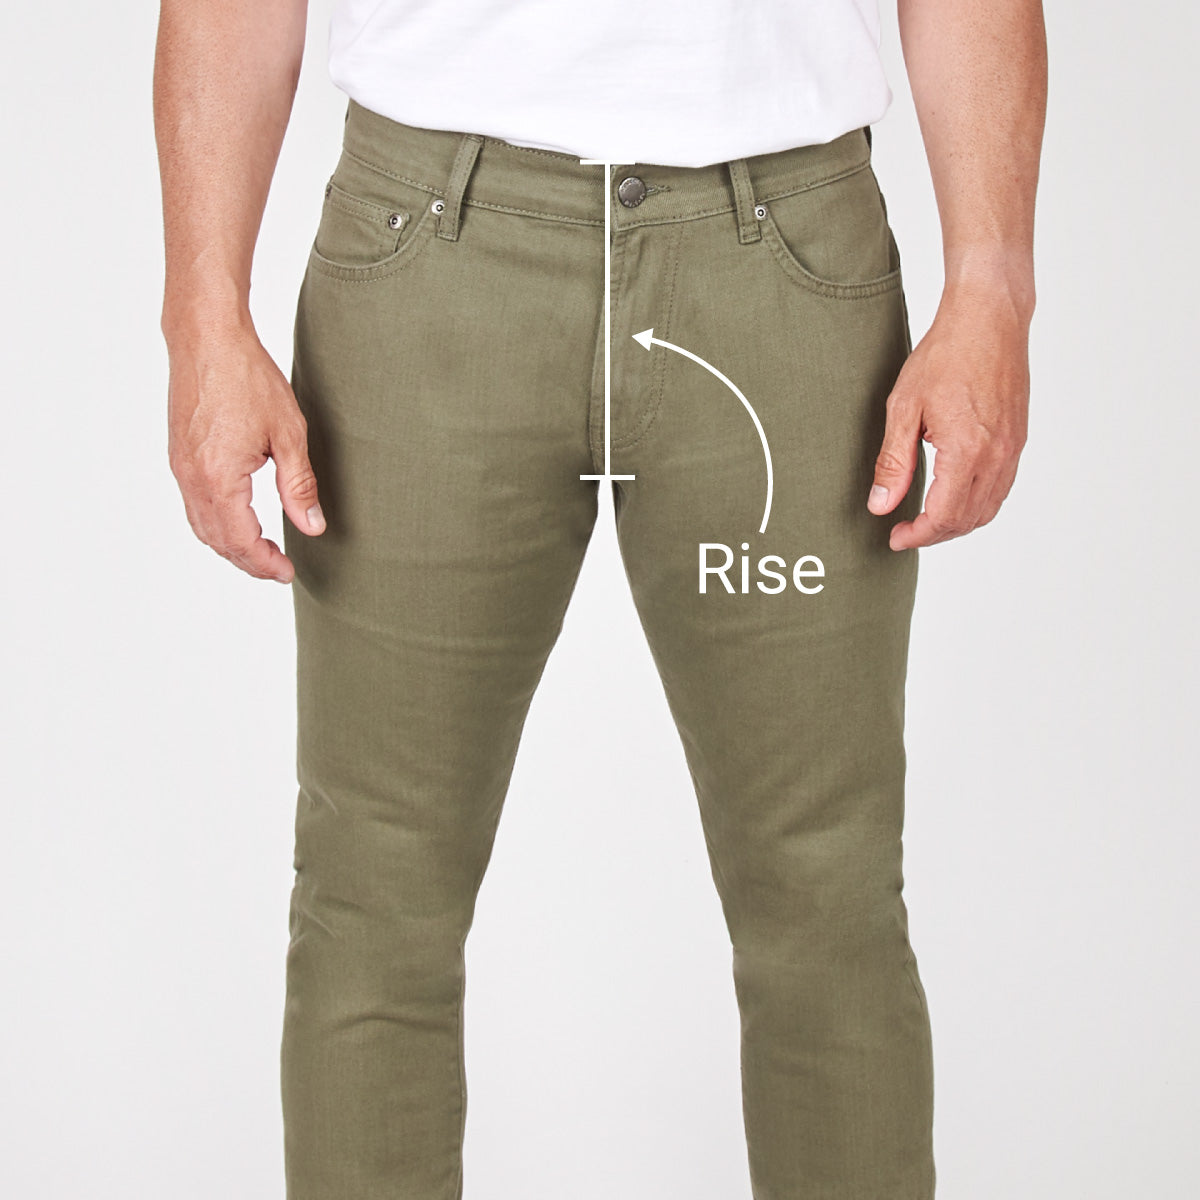 Buy Trending Pants for Men Online at Killer Jeans